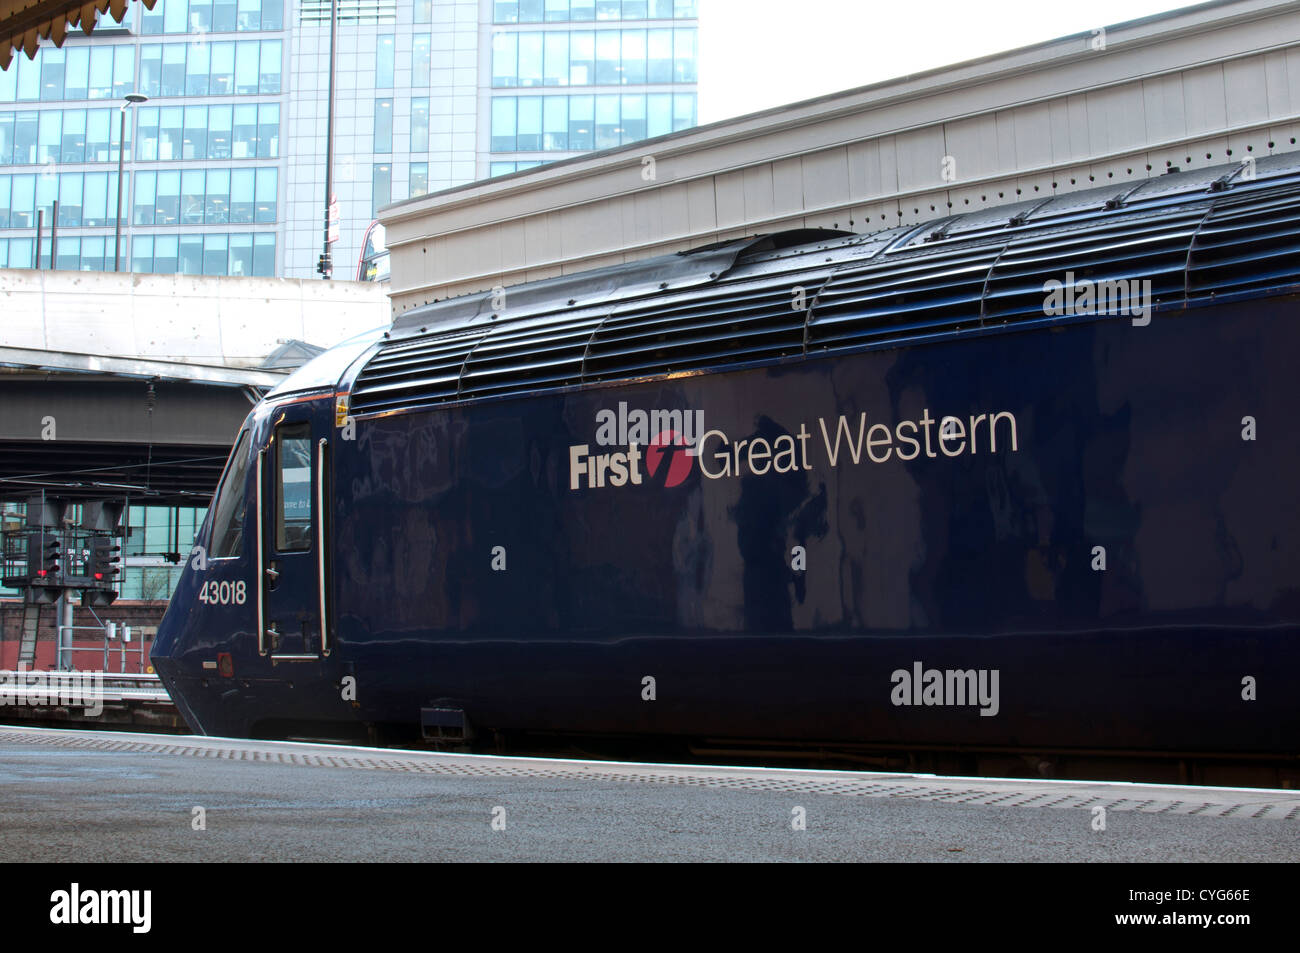 Primo grande Western con il treno alla stazione di Paddington, London, Regno Unito Foto Stock